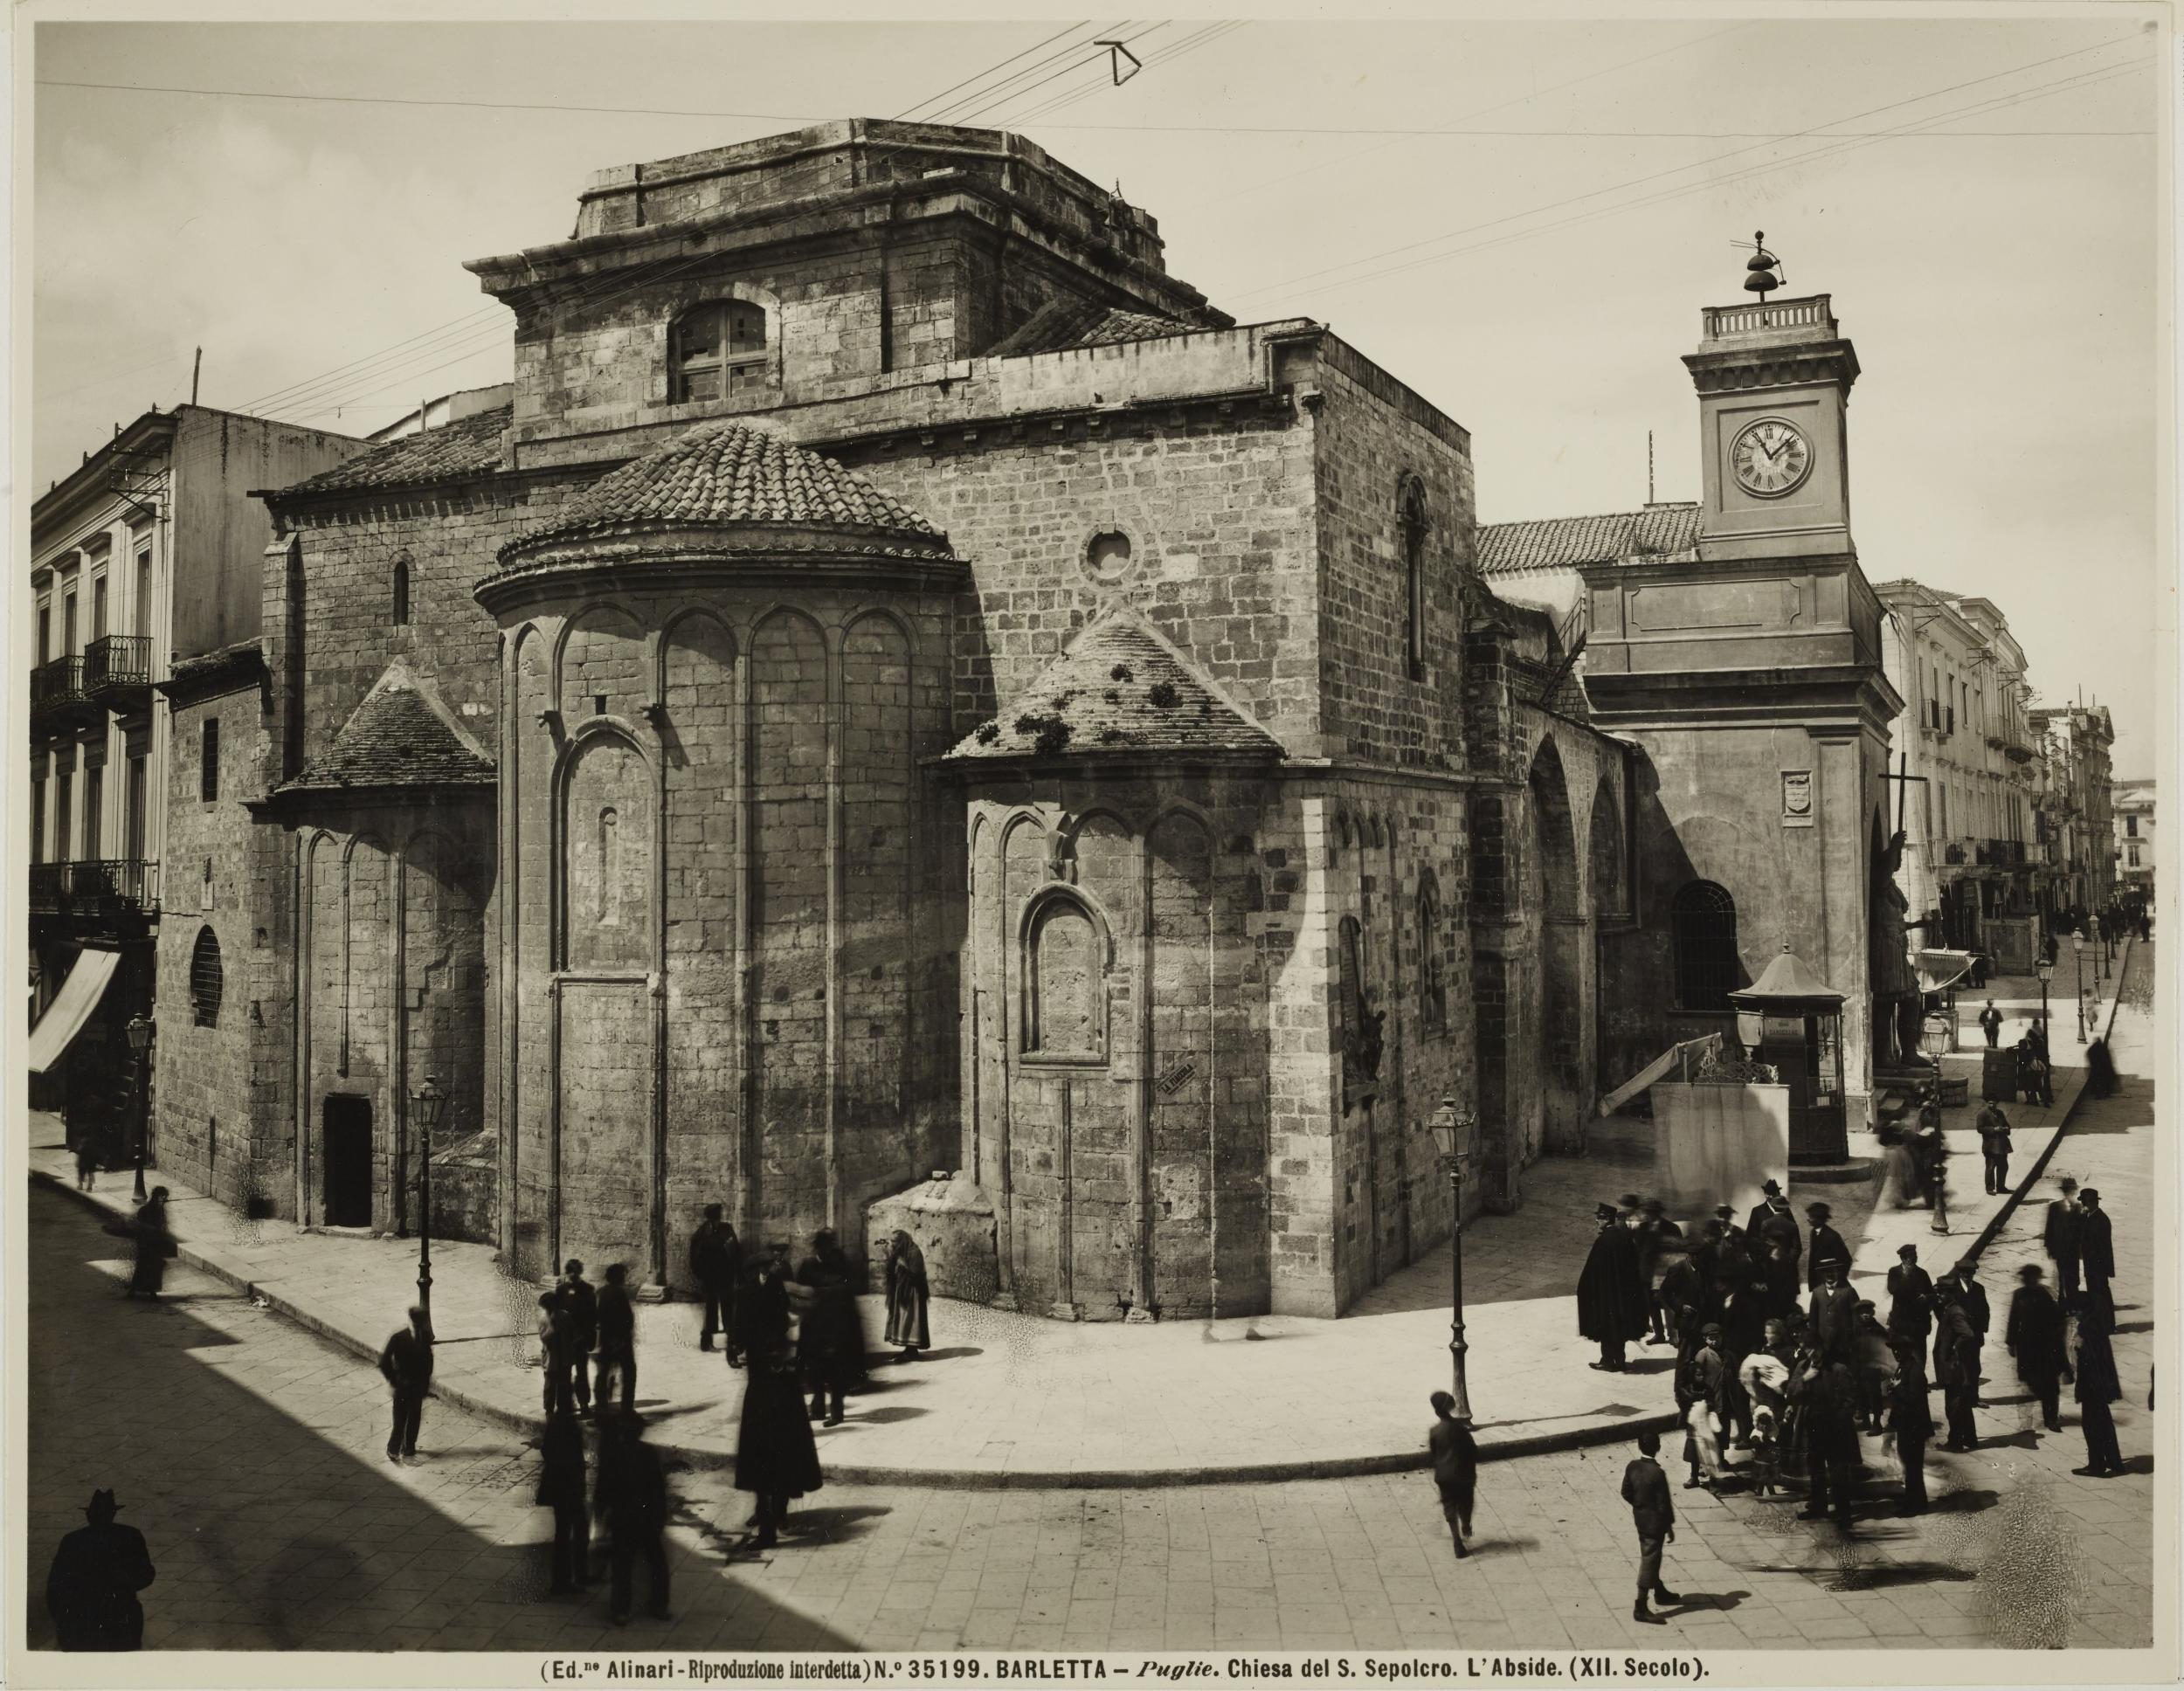 Fotografo non identificato, Barletta - Chiesa di S. Sepolcro, veduta absidale e fianco sinistro, 1901-1925, gelatina ai sali d'argento/carta, MPI136921